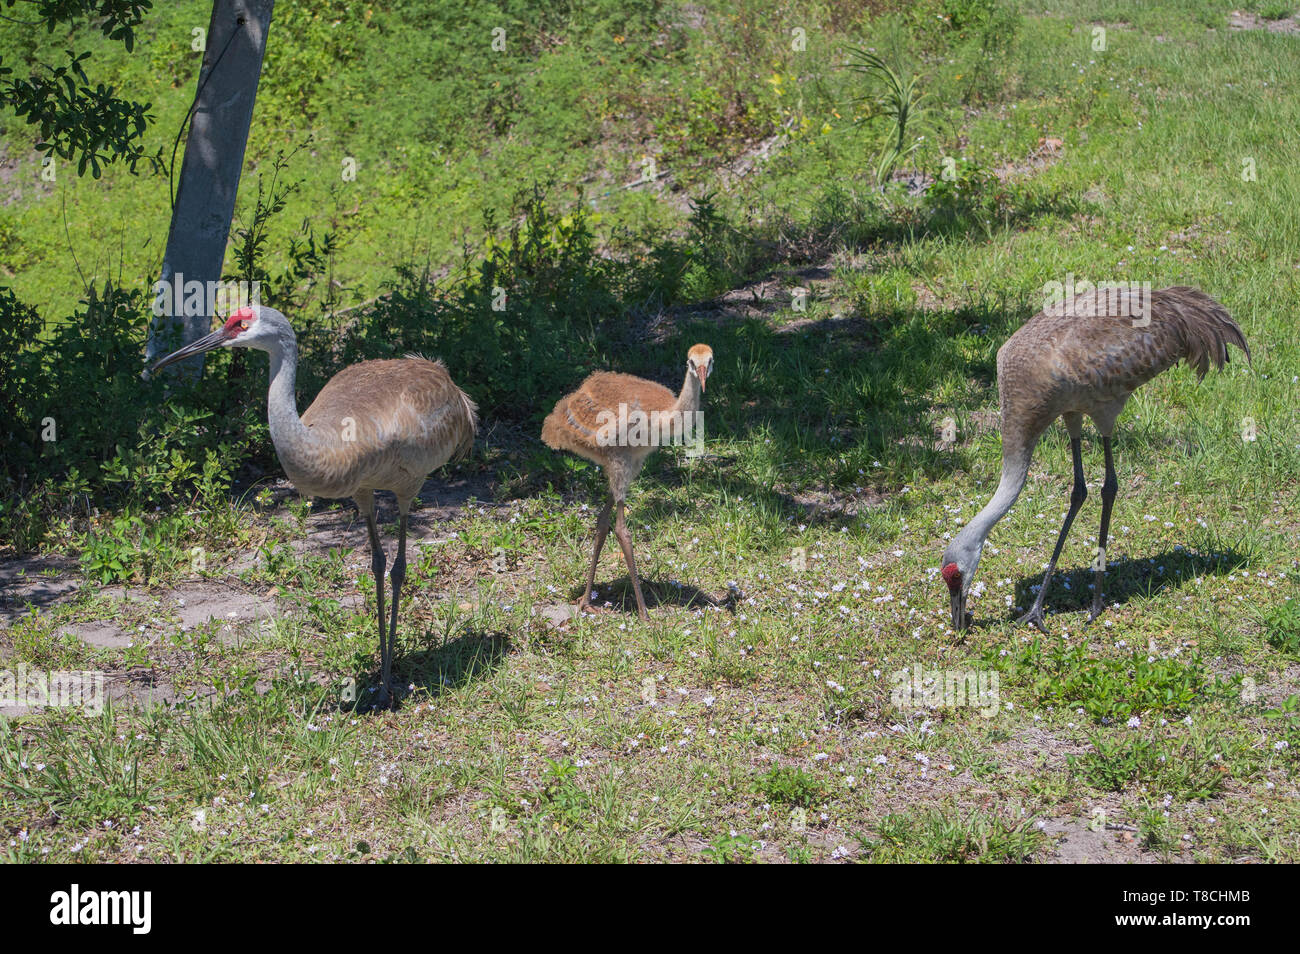 Landschaft Naturfotografie Florida Sandhill nach Eltern suchen nach Futter essen grüne Gras Feld junge Jugendliche Küken Vogel steht in der Nähe für die Zukunft Stockfoto